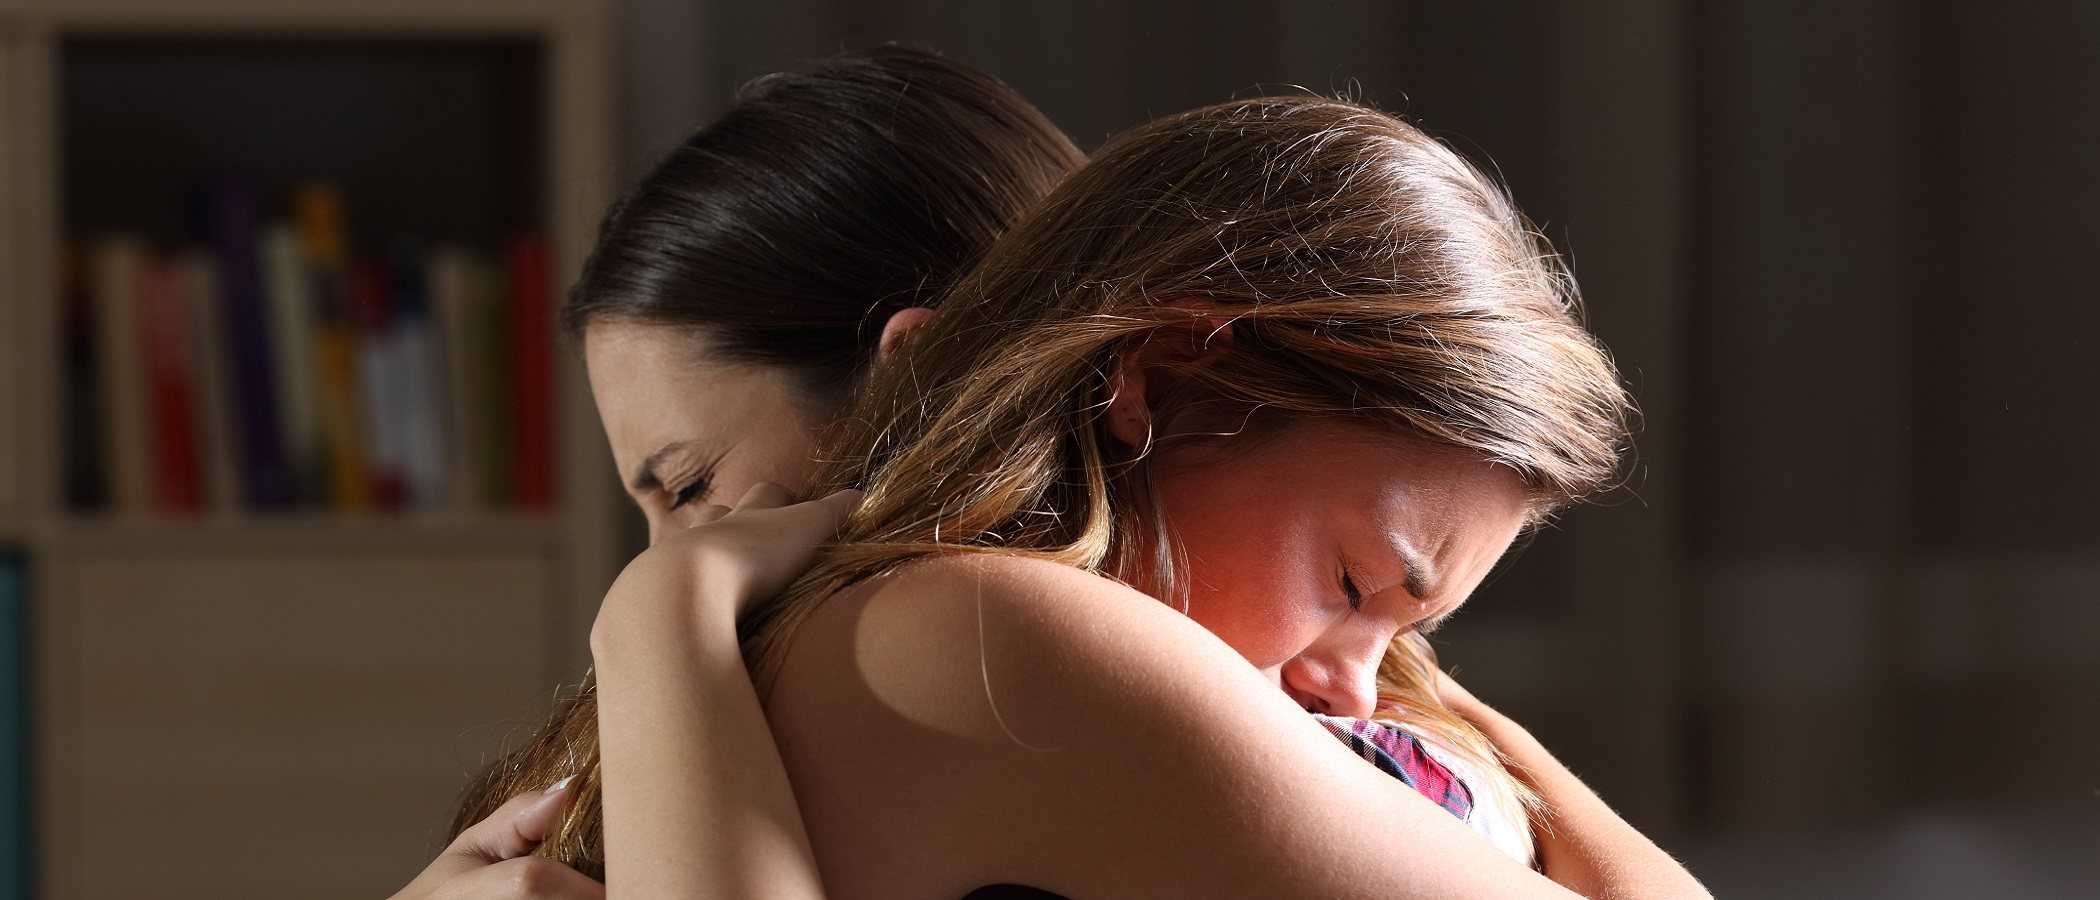 Cómo ayudar a un adolescente cuando está llorando